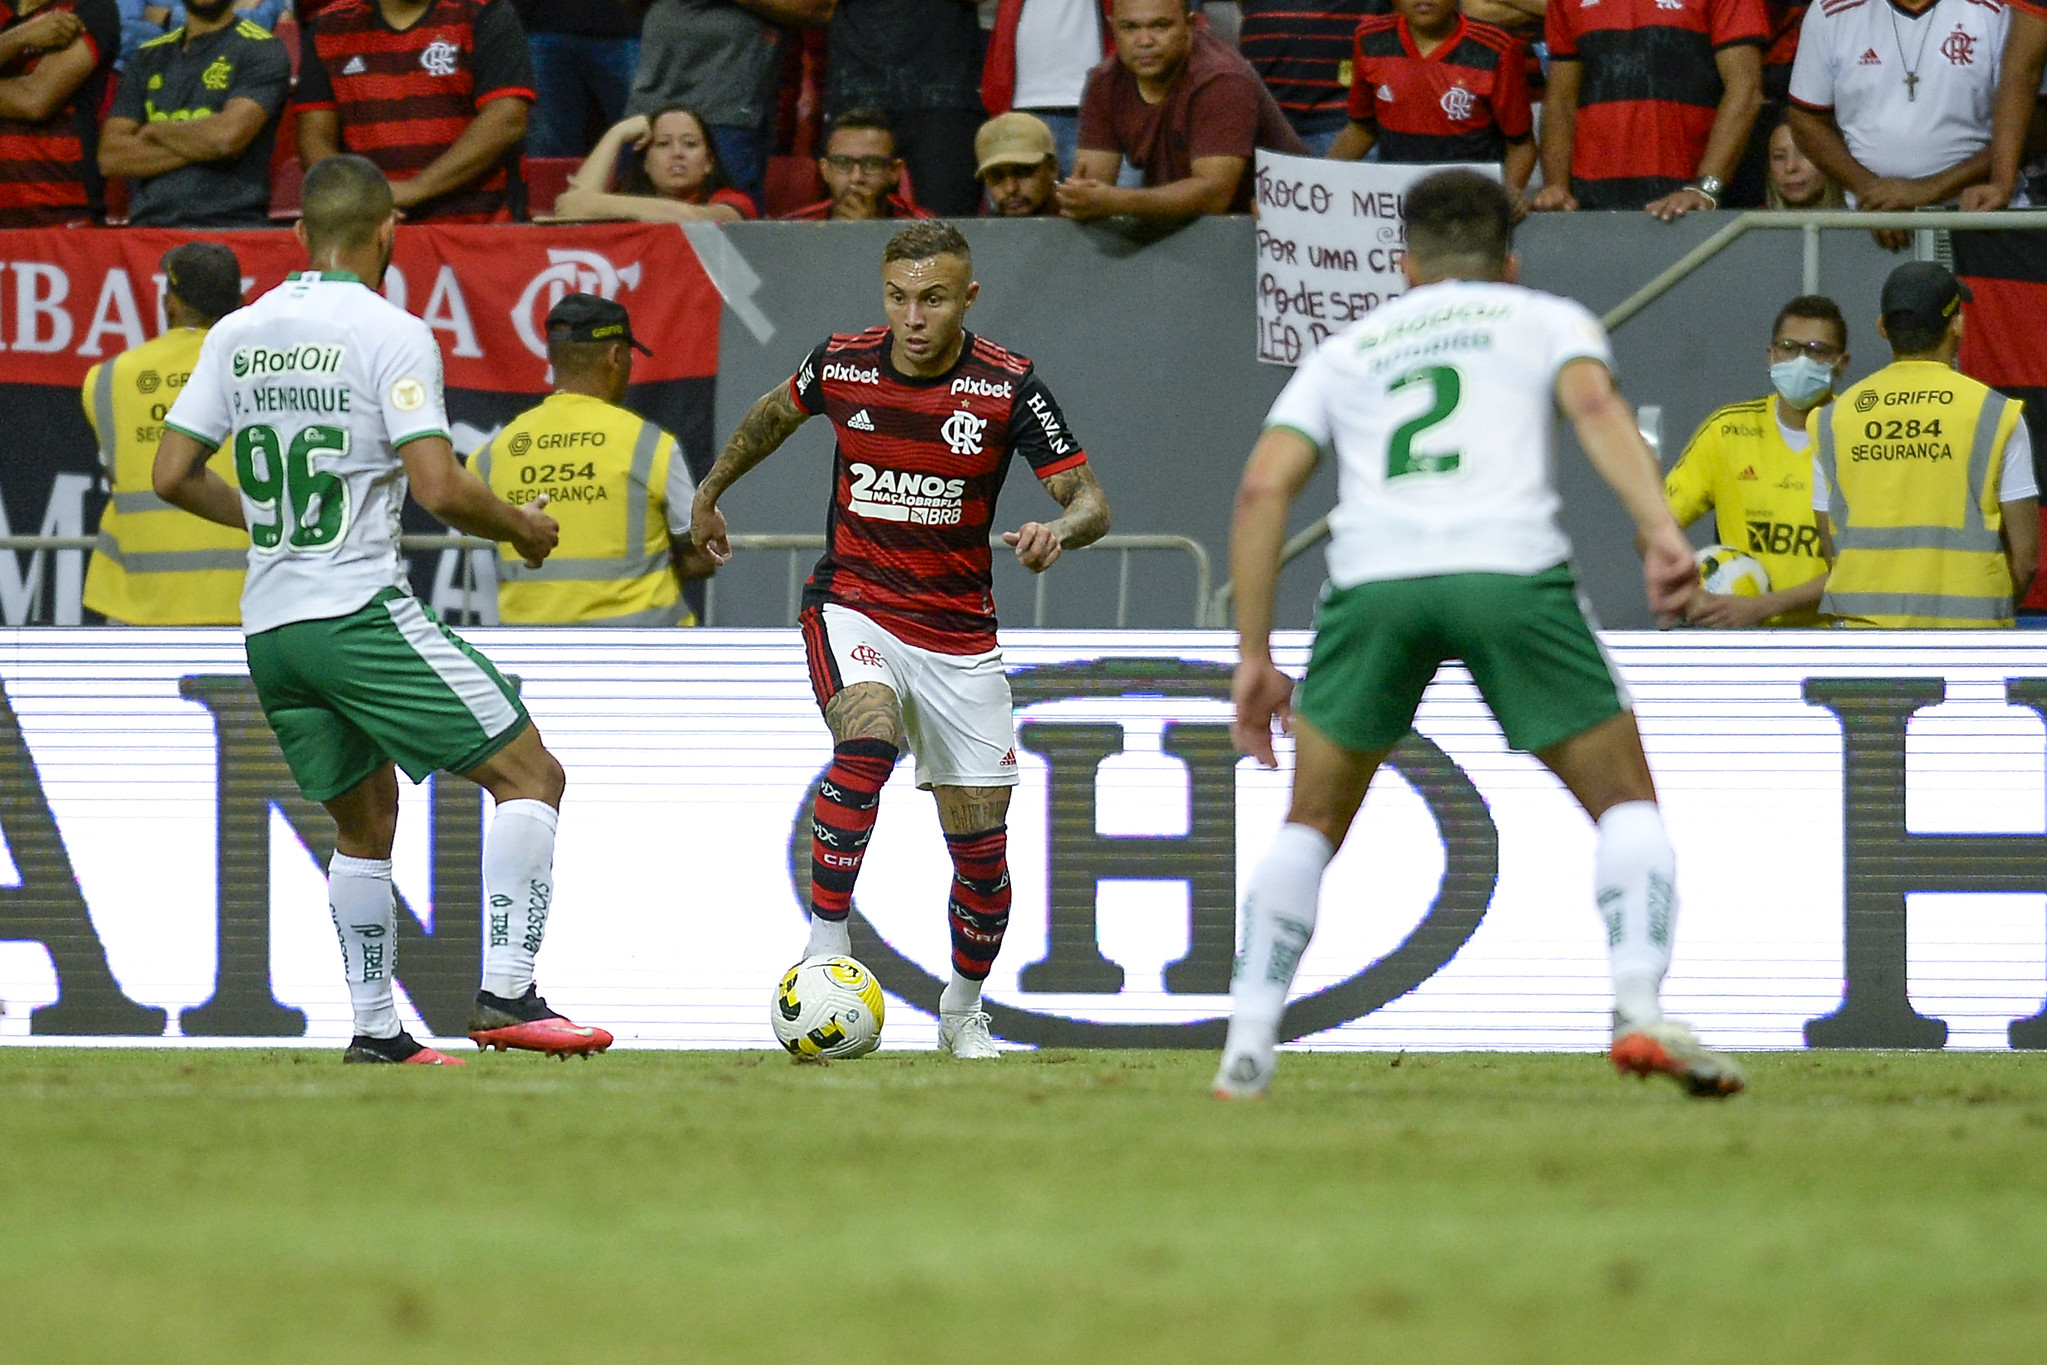 Análise ENM: Flamengo resolve em 17 minutos, amplia no final e tem vitória tranquila sobre o Juventude